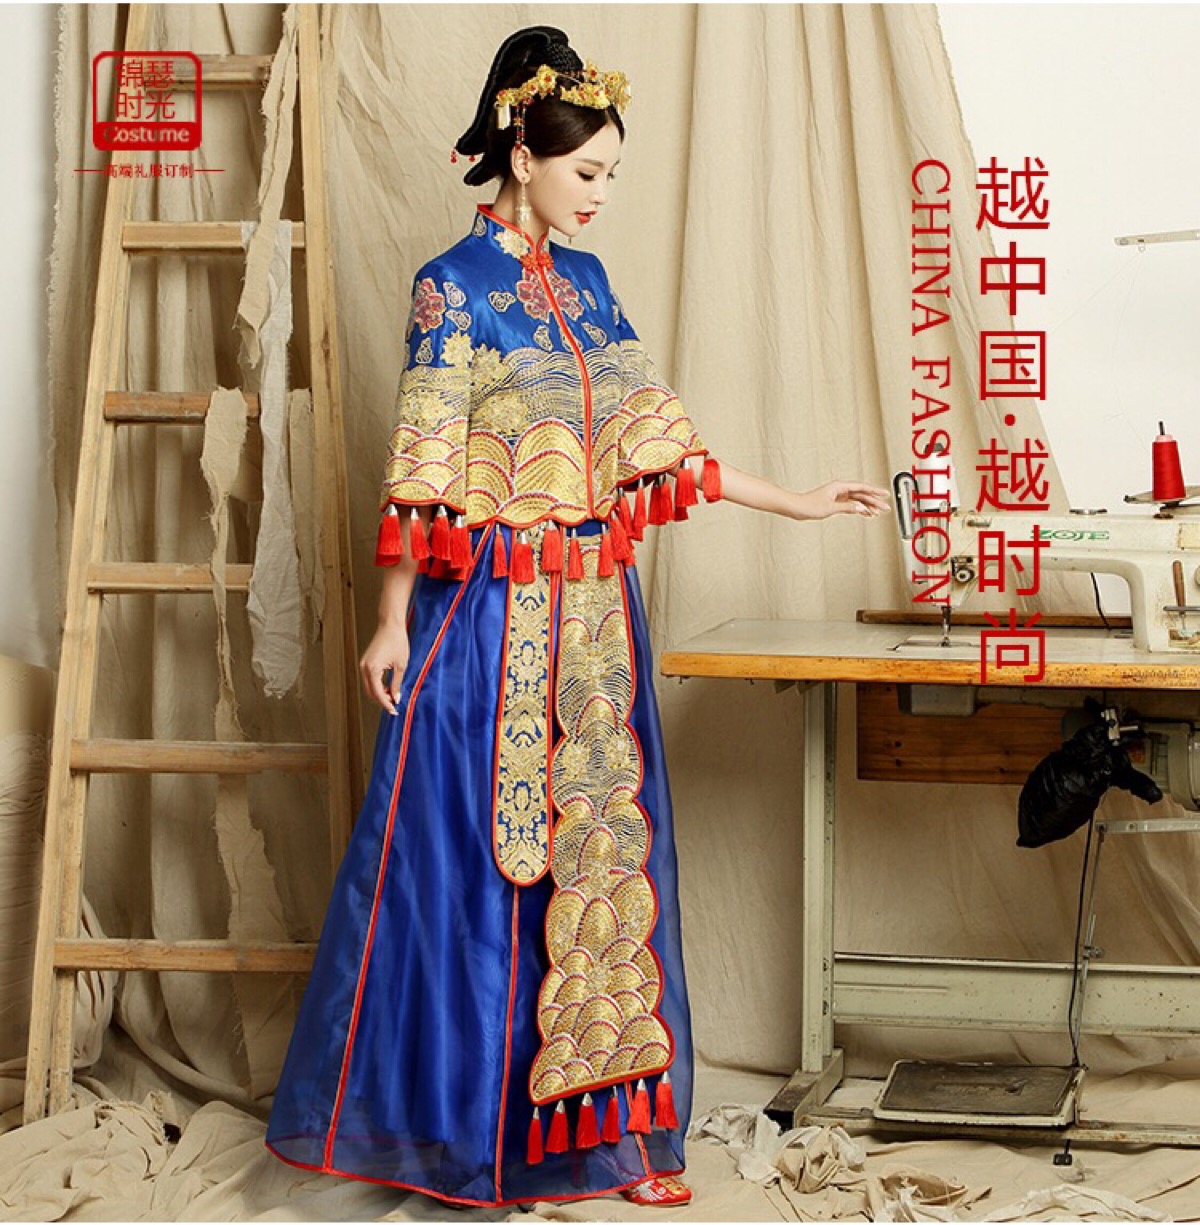 中国式婚纱